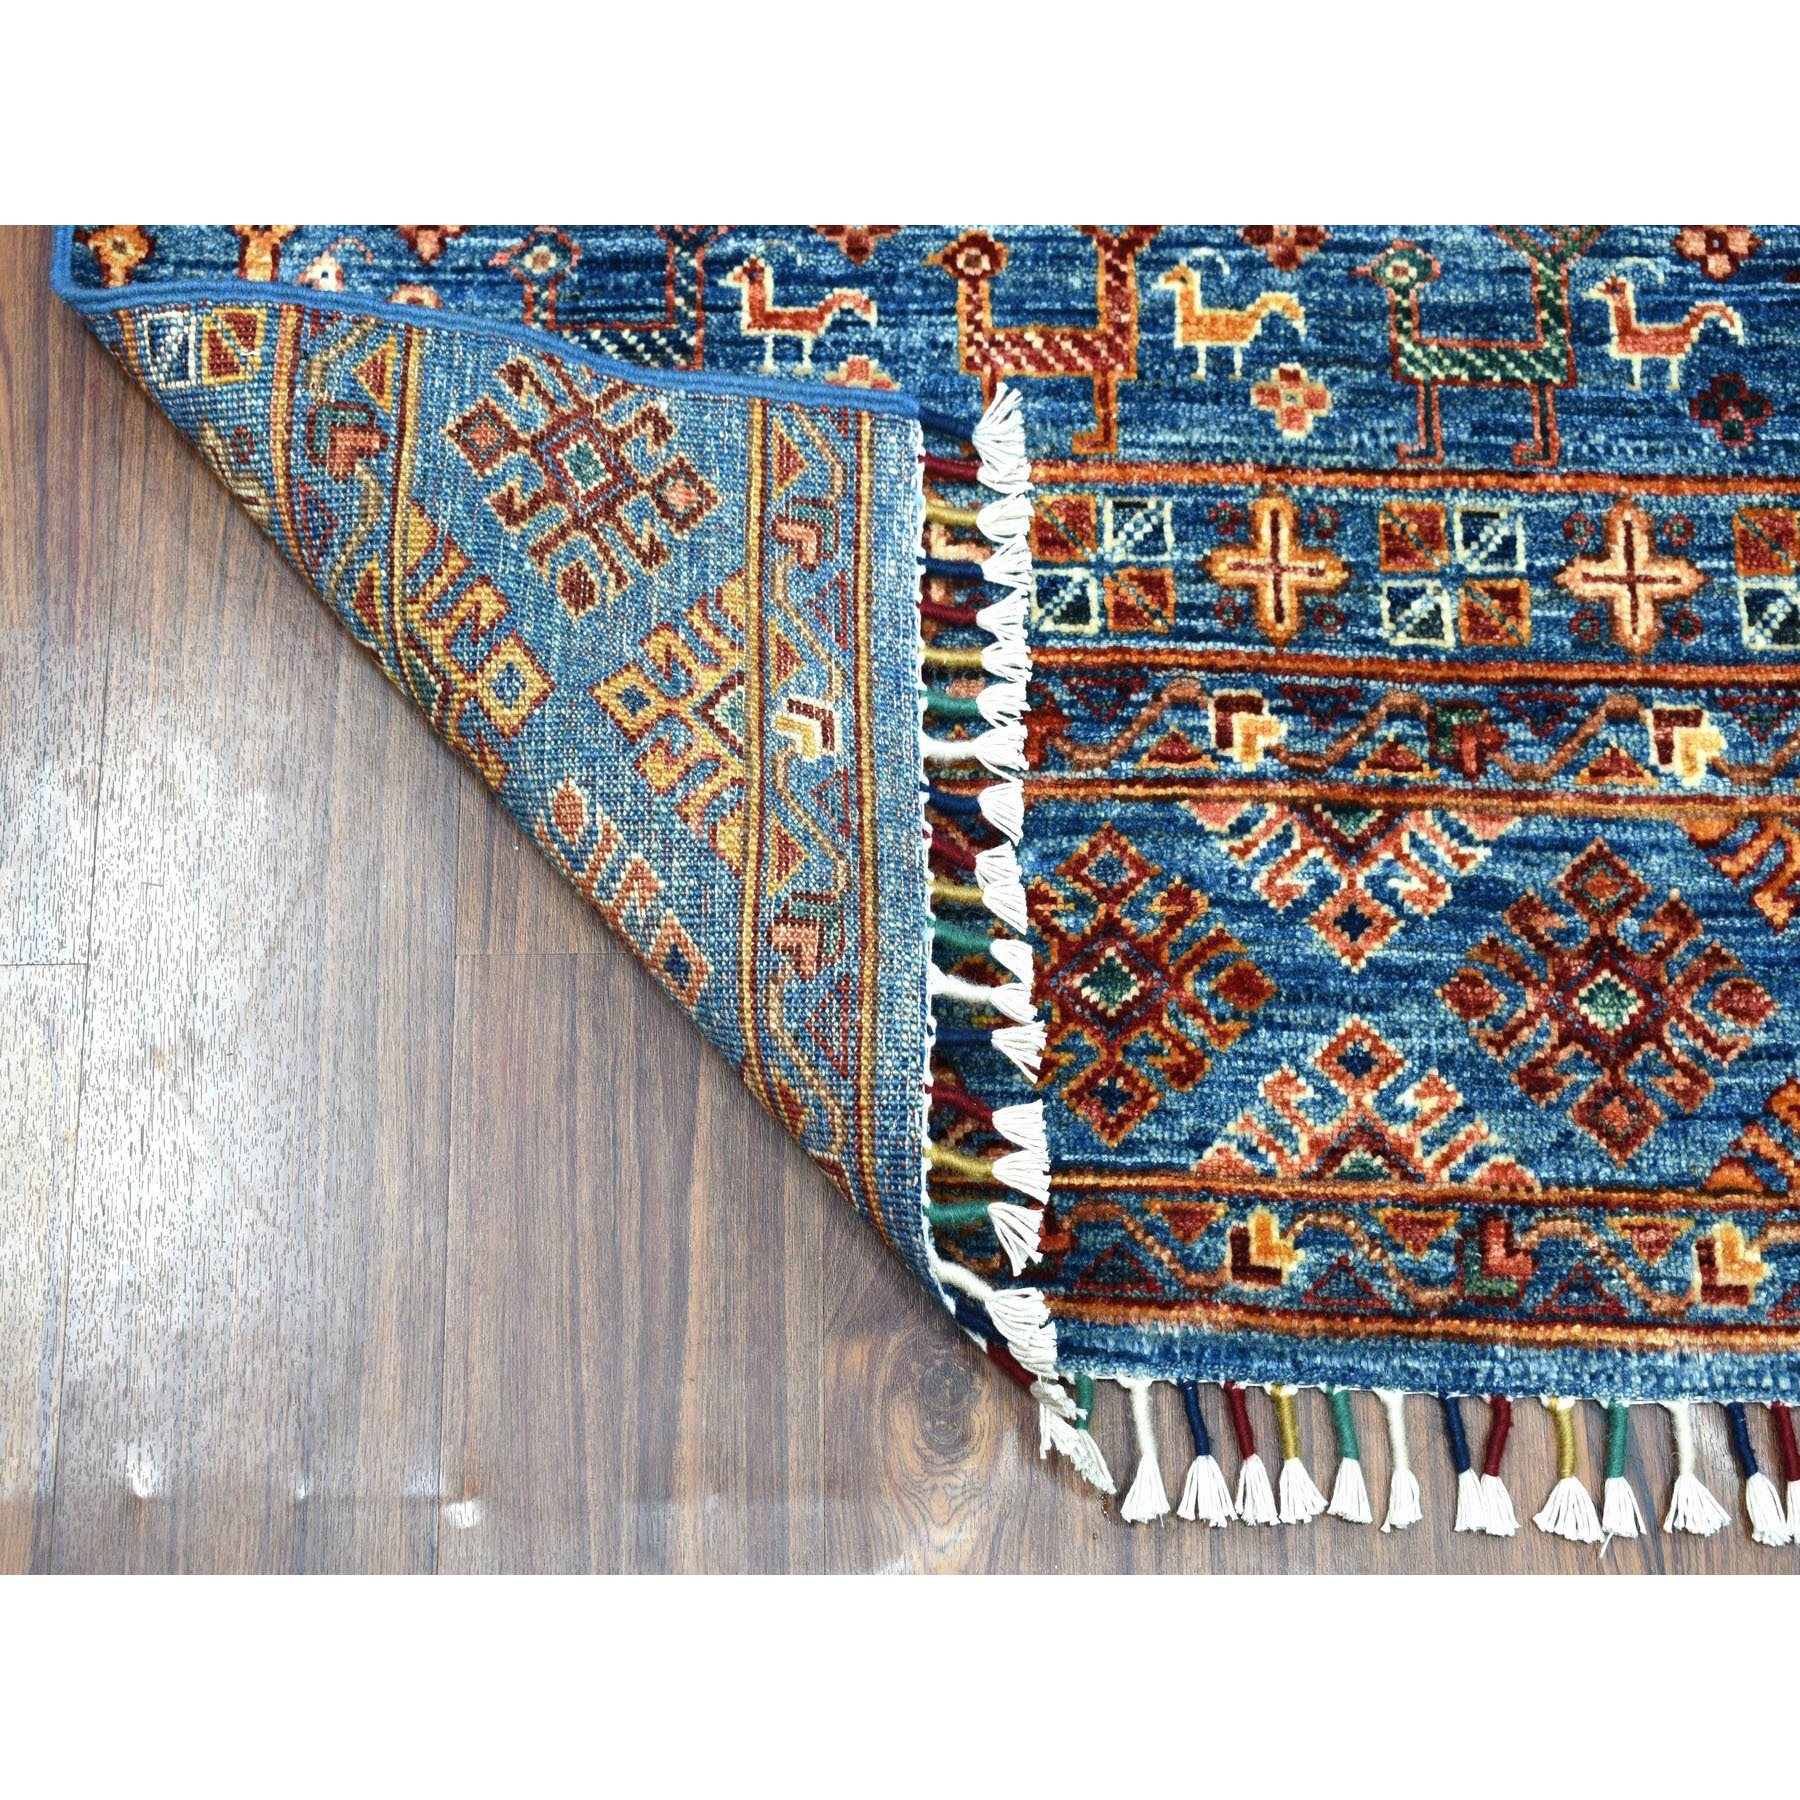 3-x4-8  Khorjin Design Blue Super Kazak With Animals Pure Wool Hand Knotted Oriental Rug 